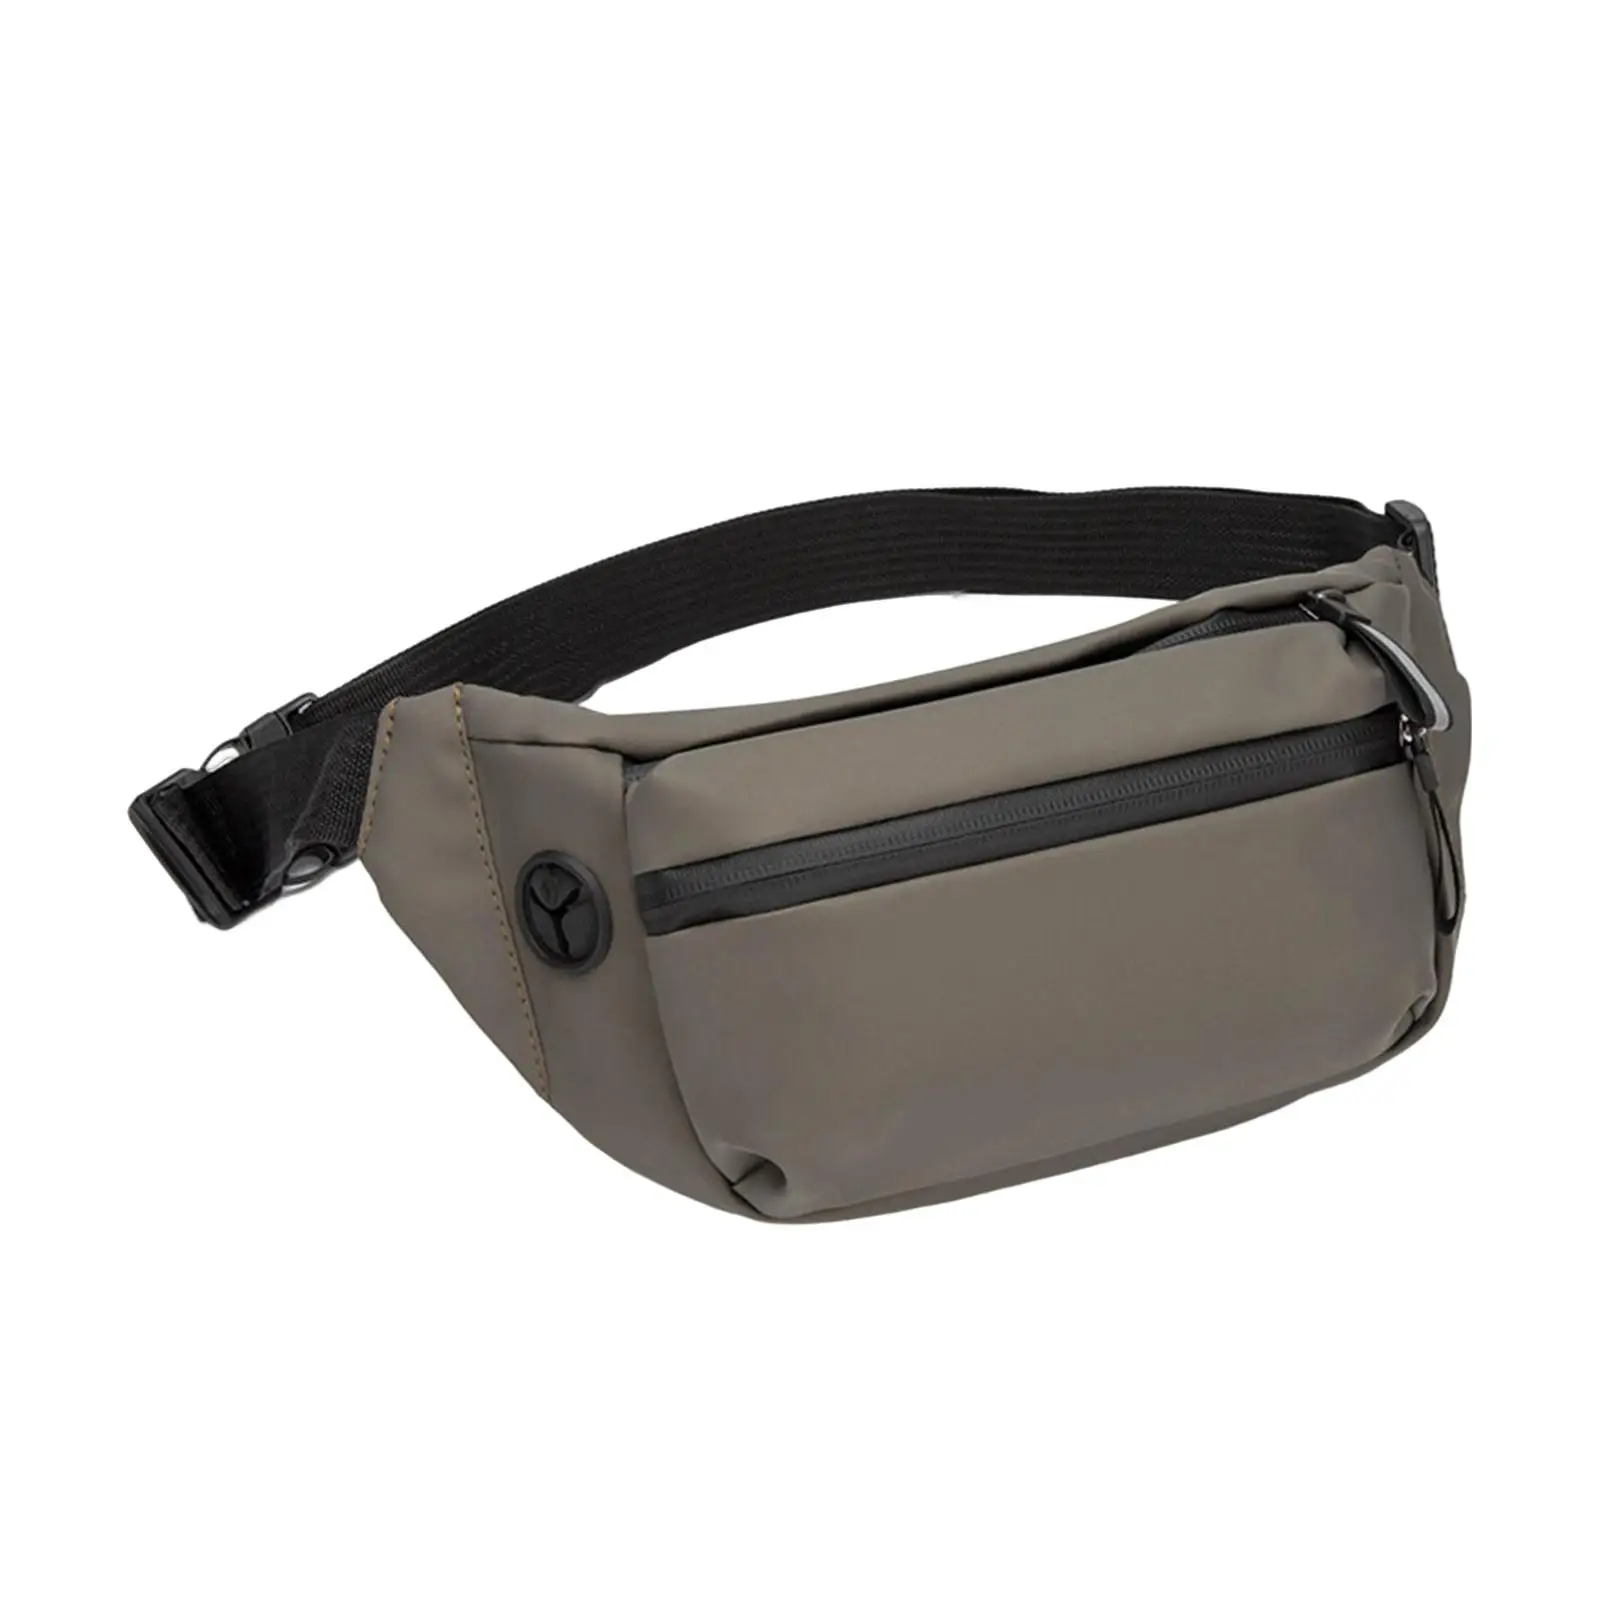 Shoulder Bag Lightweight Compact with Zipper Pocket Adjustable Shoulder Backpack for Hiking Sport Outdoor Travel Casual